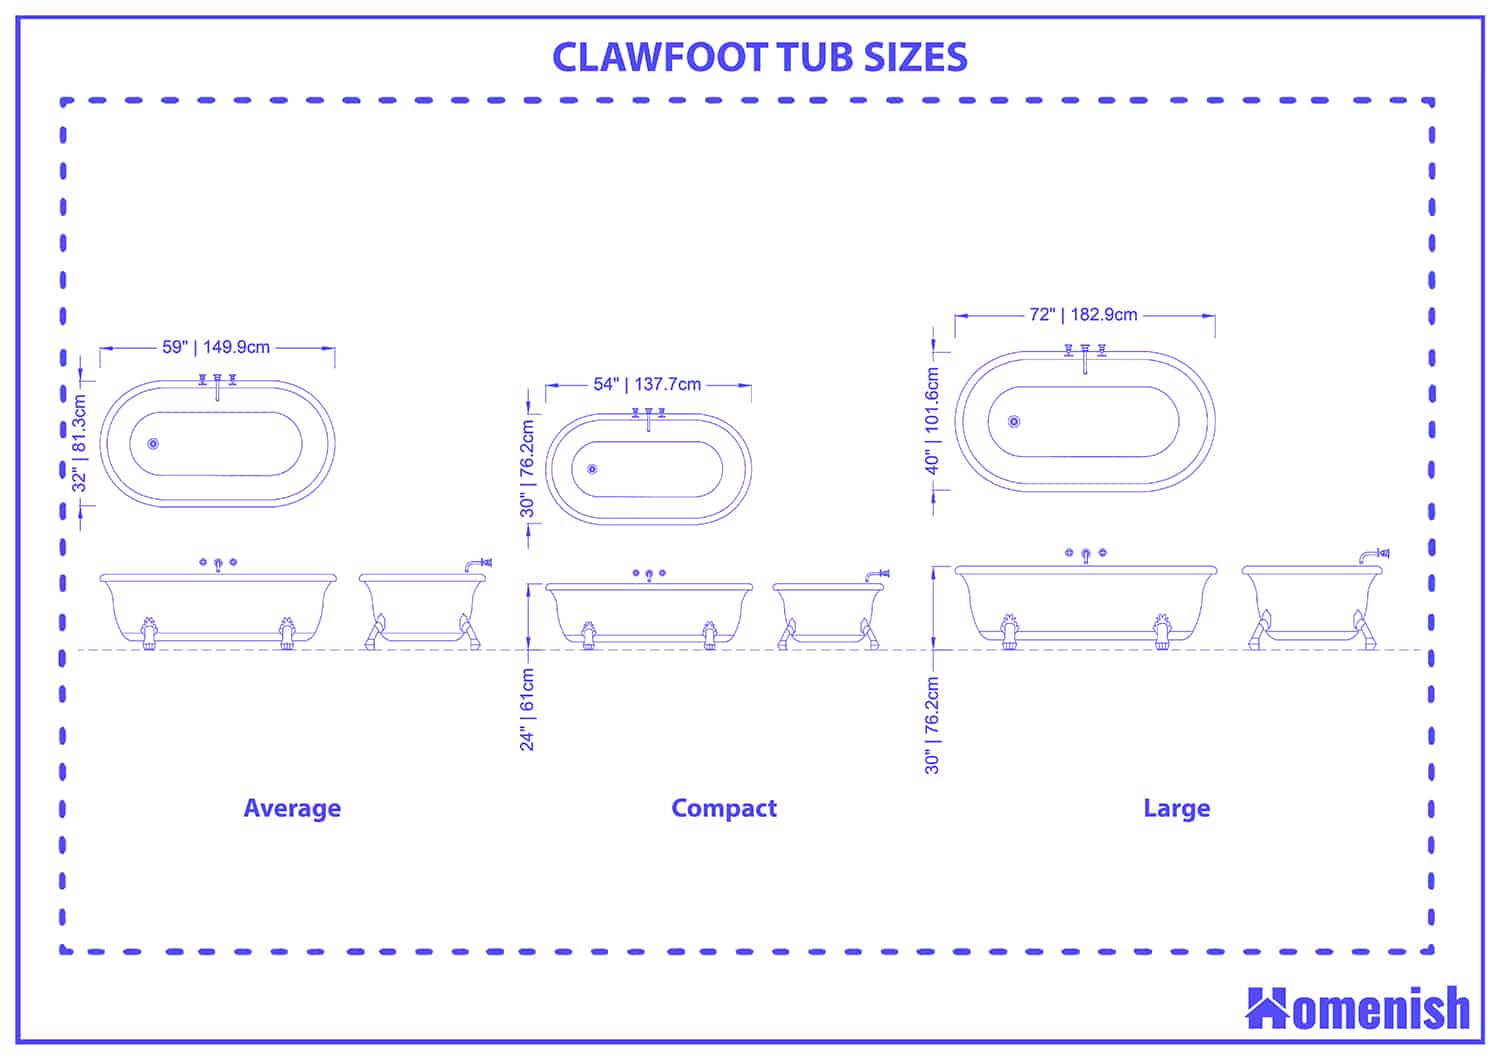 Clawfoot tub sizes